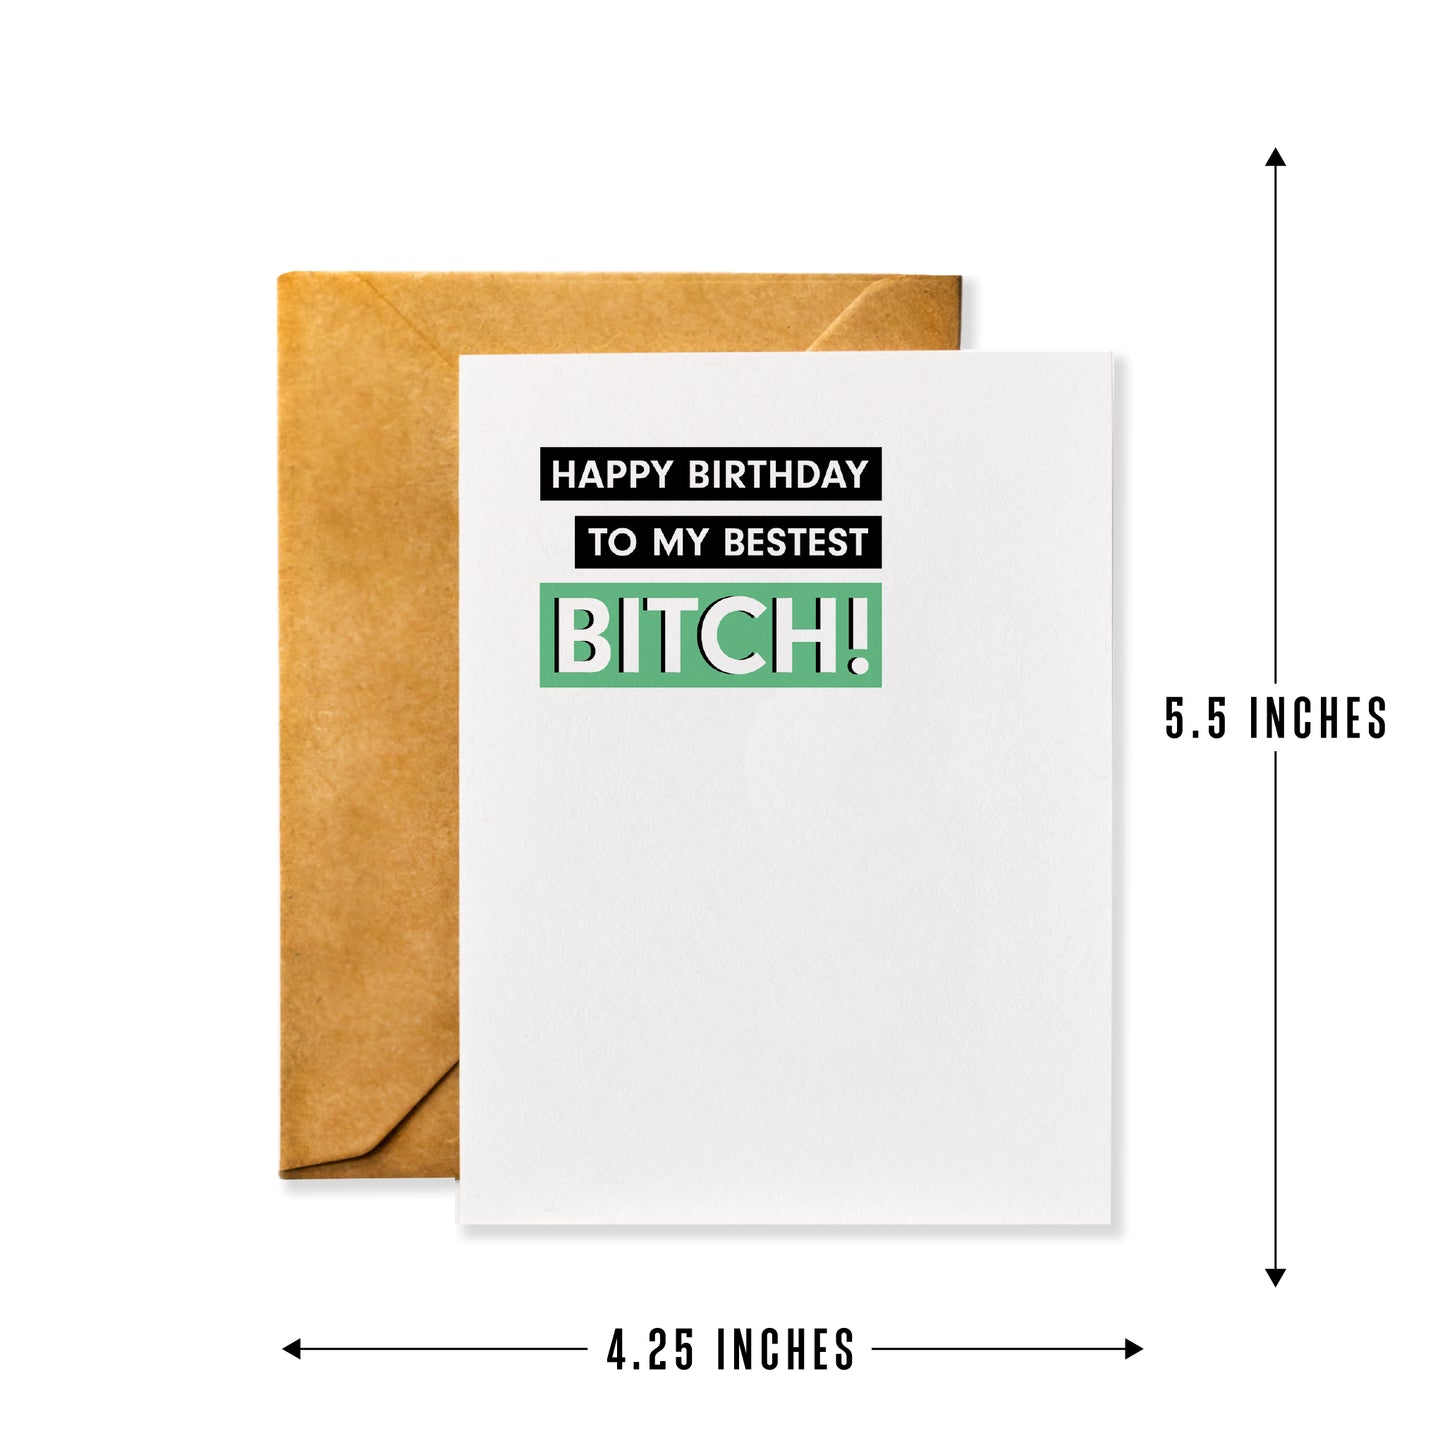 Happy Birthday to my Bestest Bitch - Funny Best Friend Birthday Card